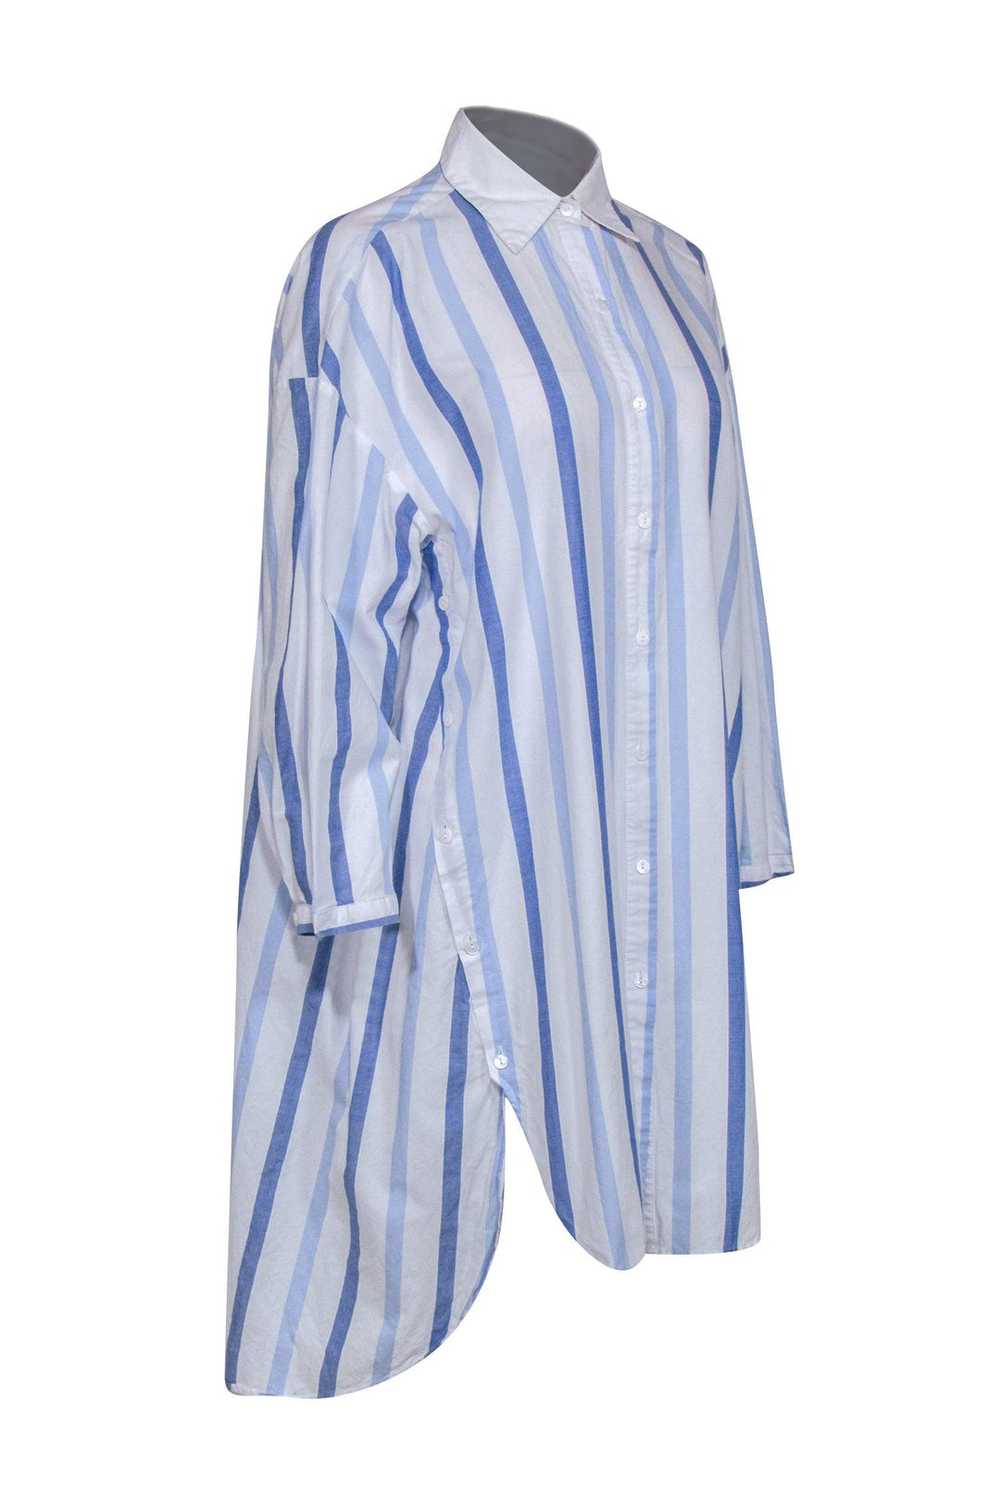 Love Binetti - White & Blue Striped Button Up Dre… - image 2